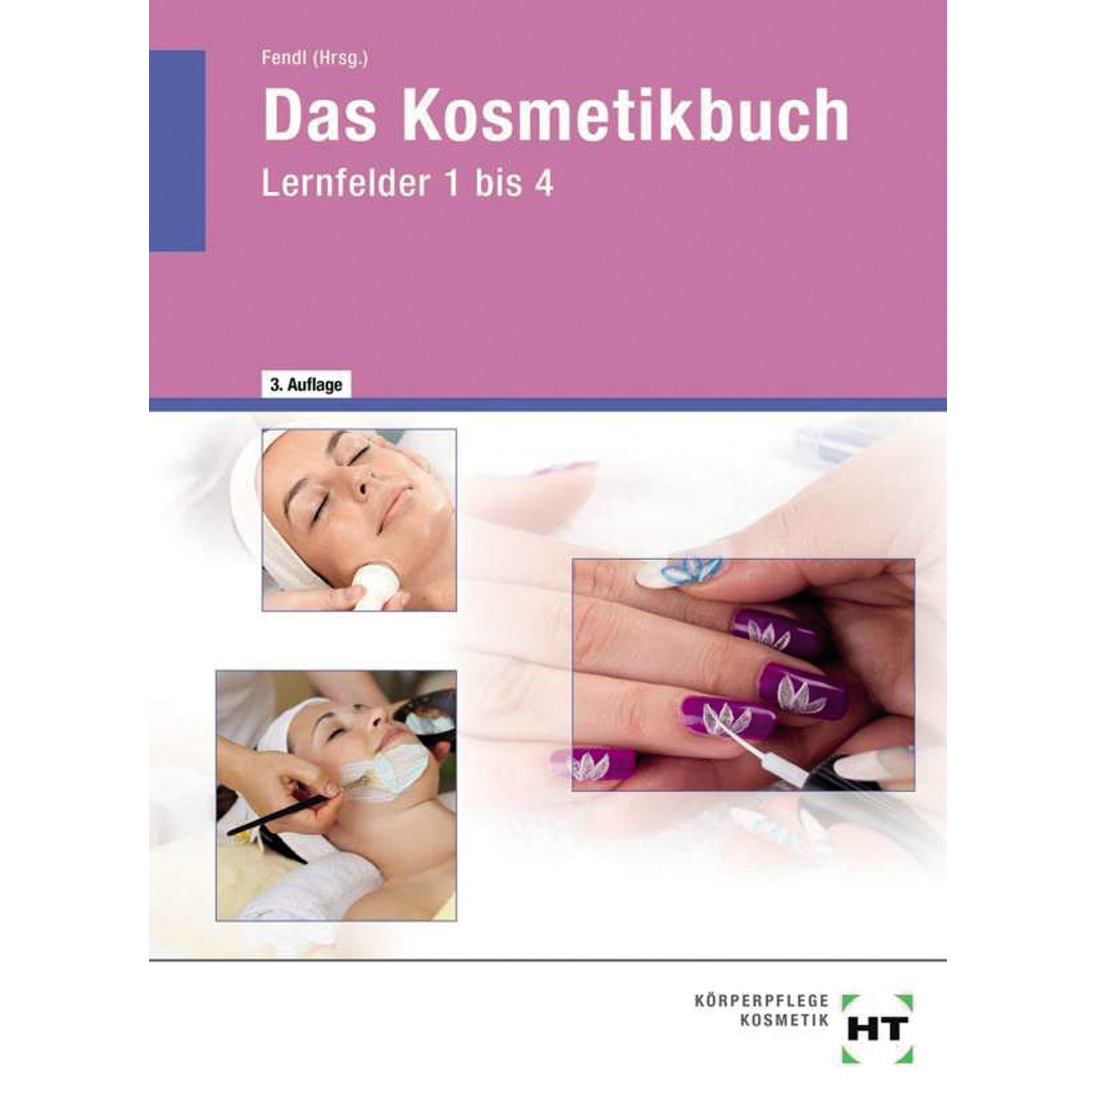 das-kosmetikbuch-in-lernfeder-1-4-_21178